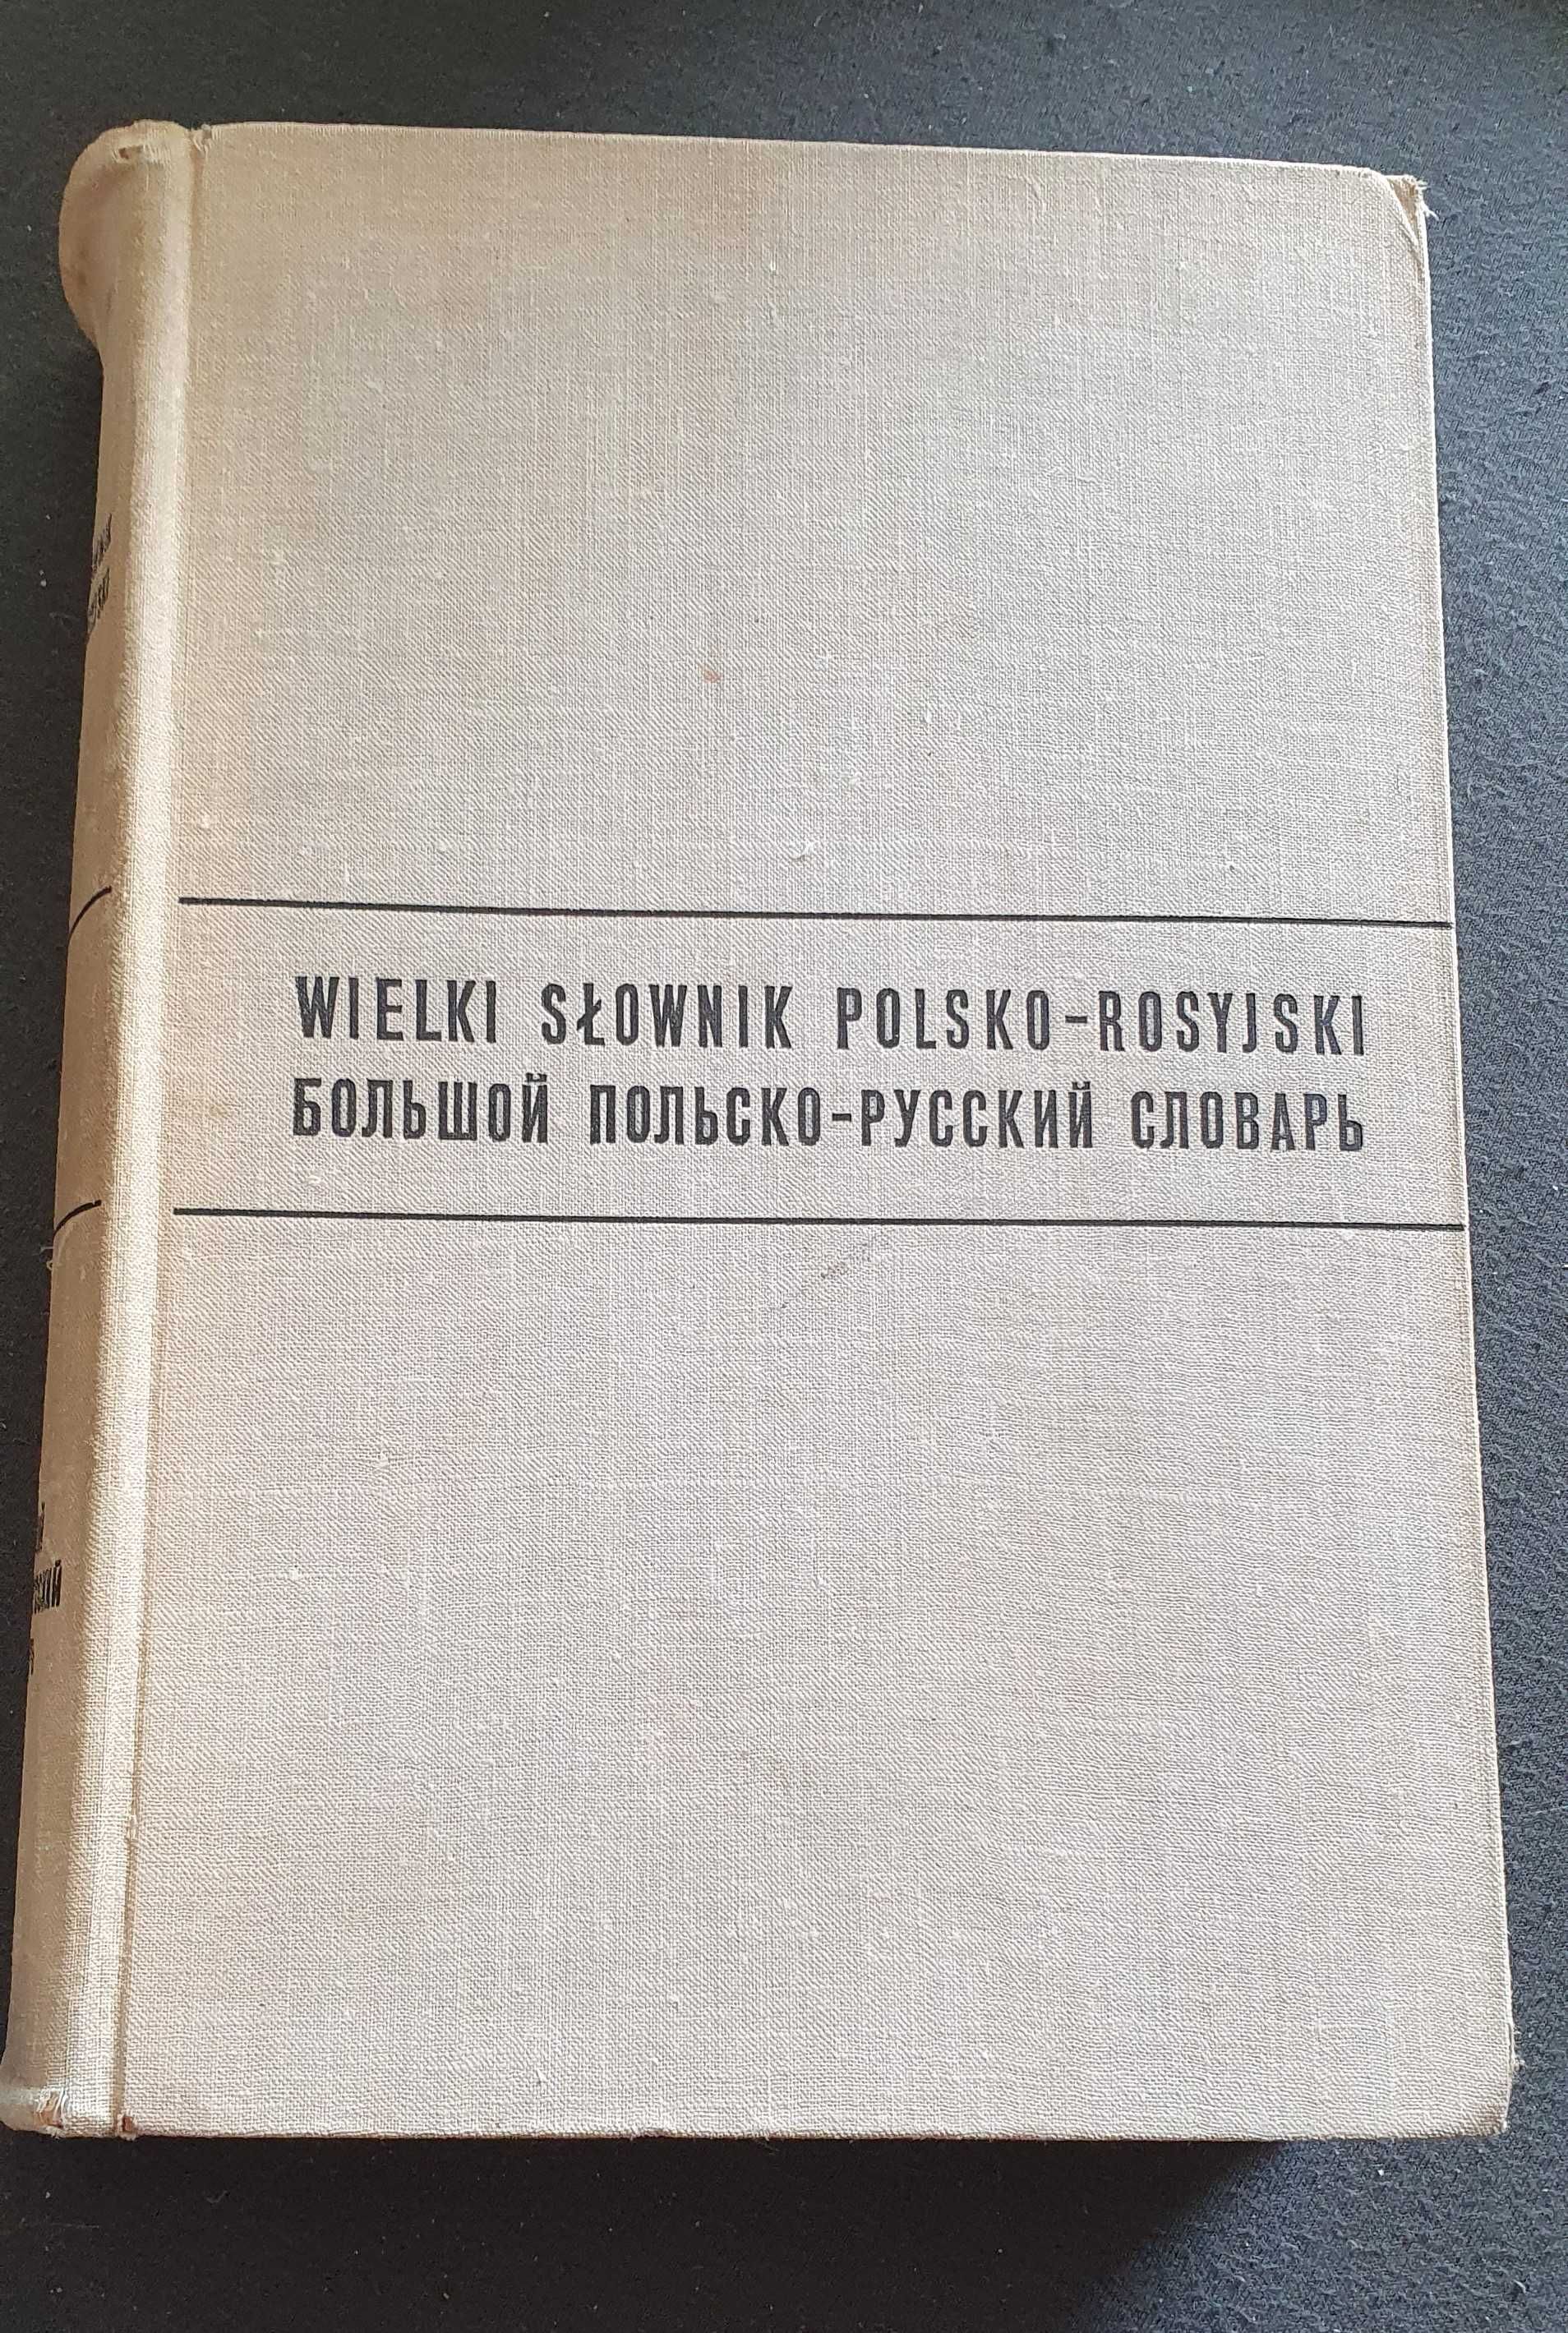 Rosyjski słowniki zestaw